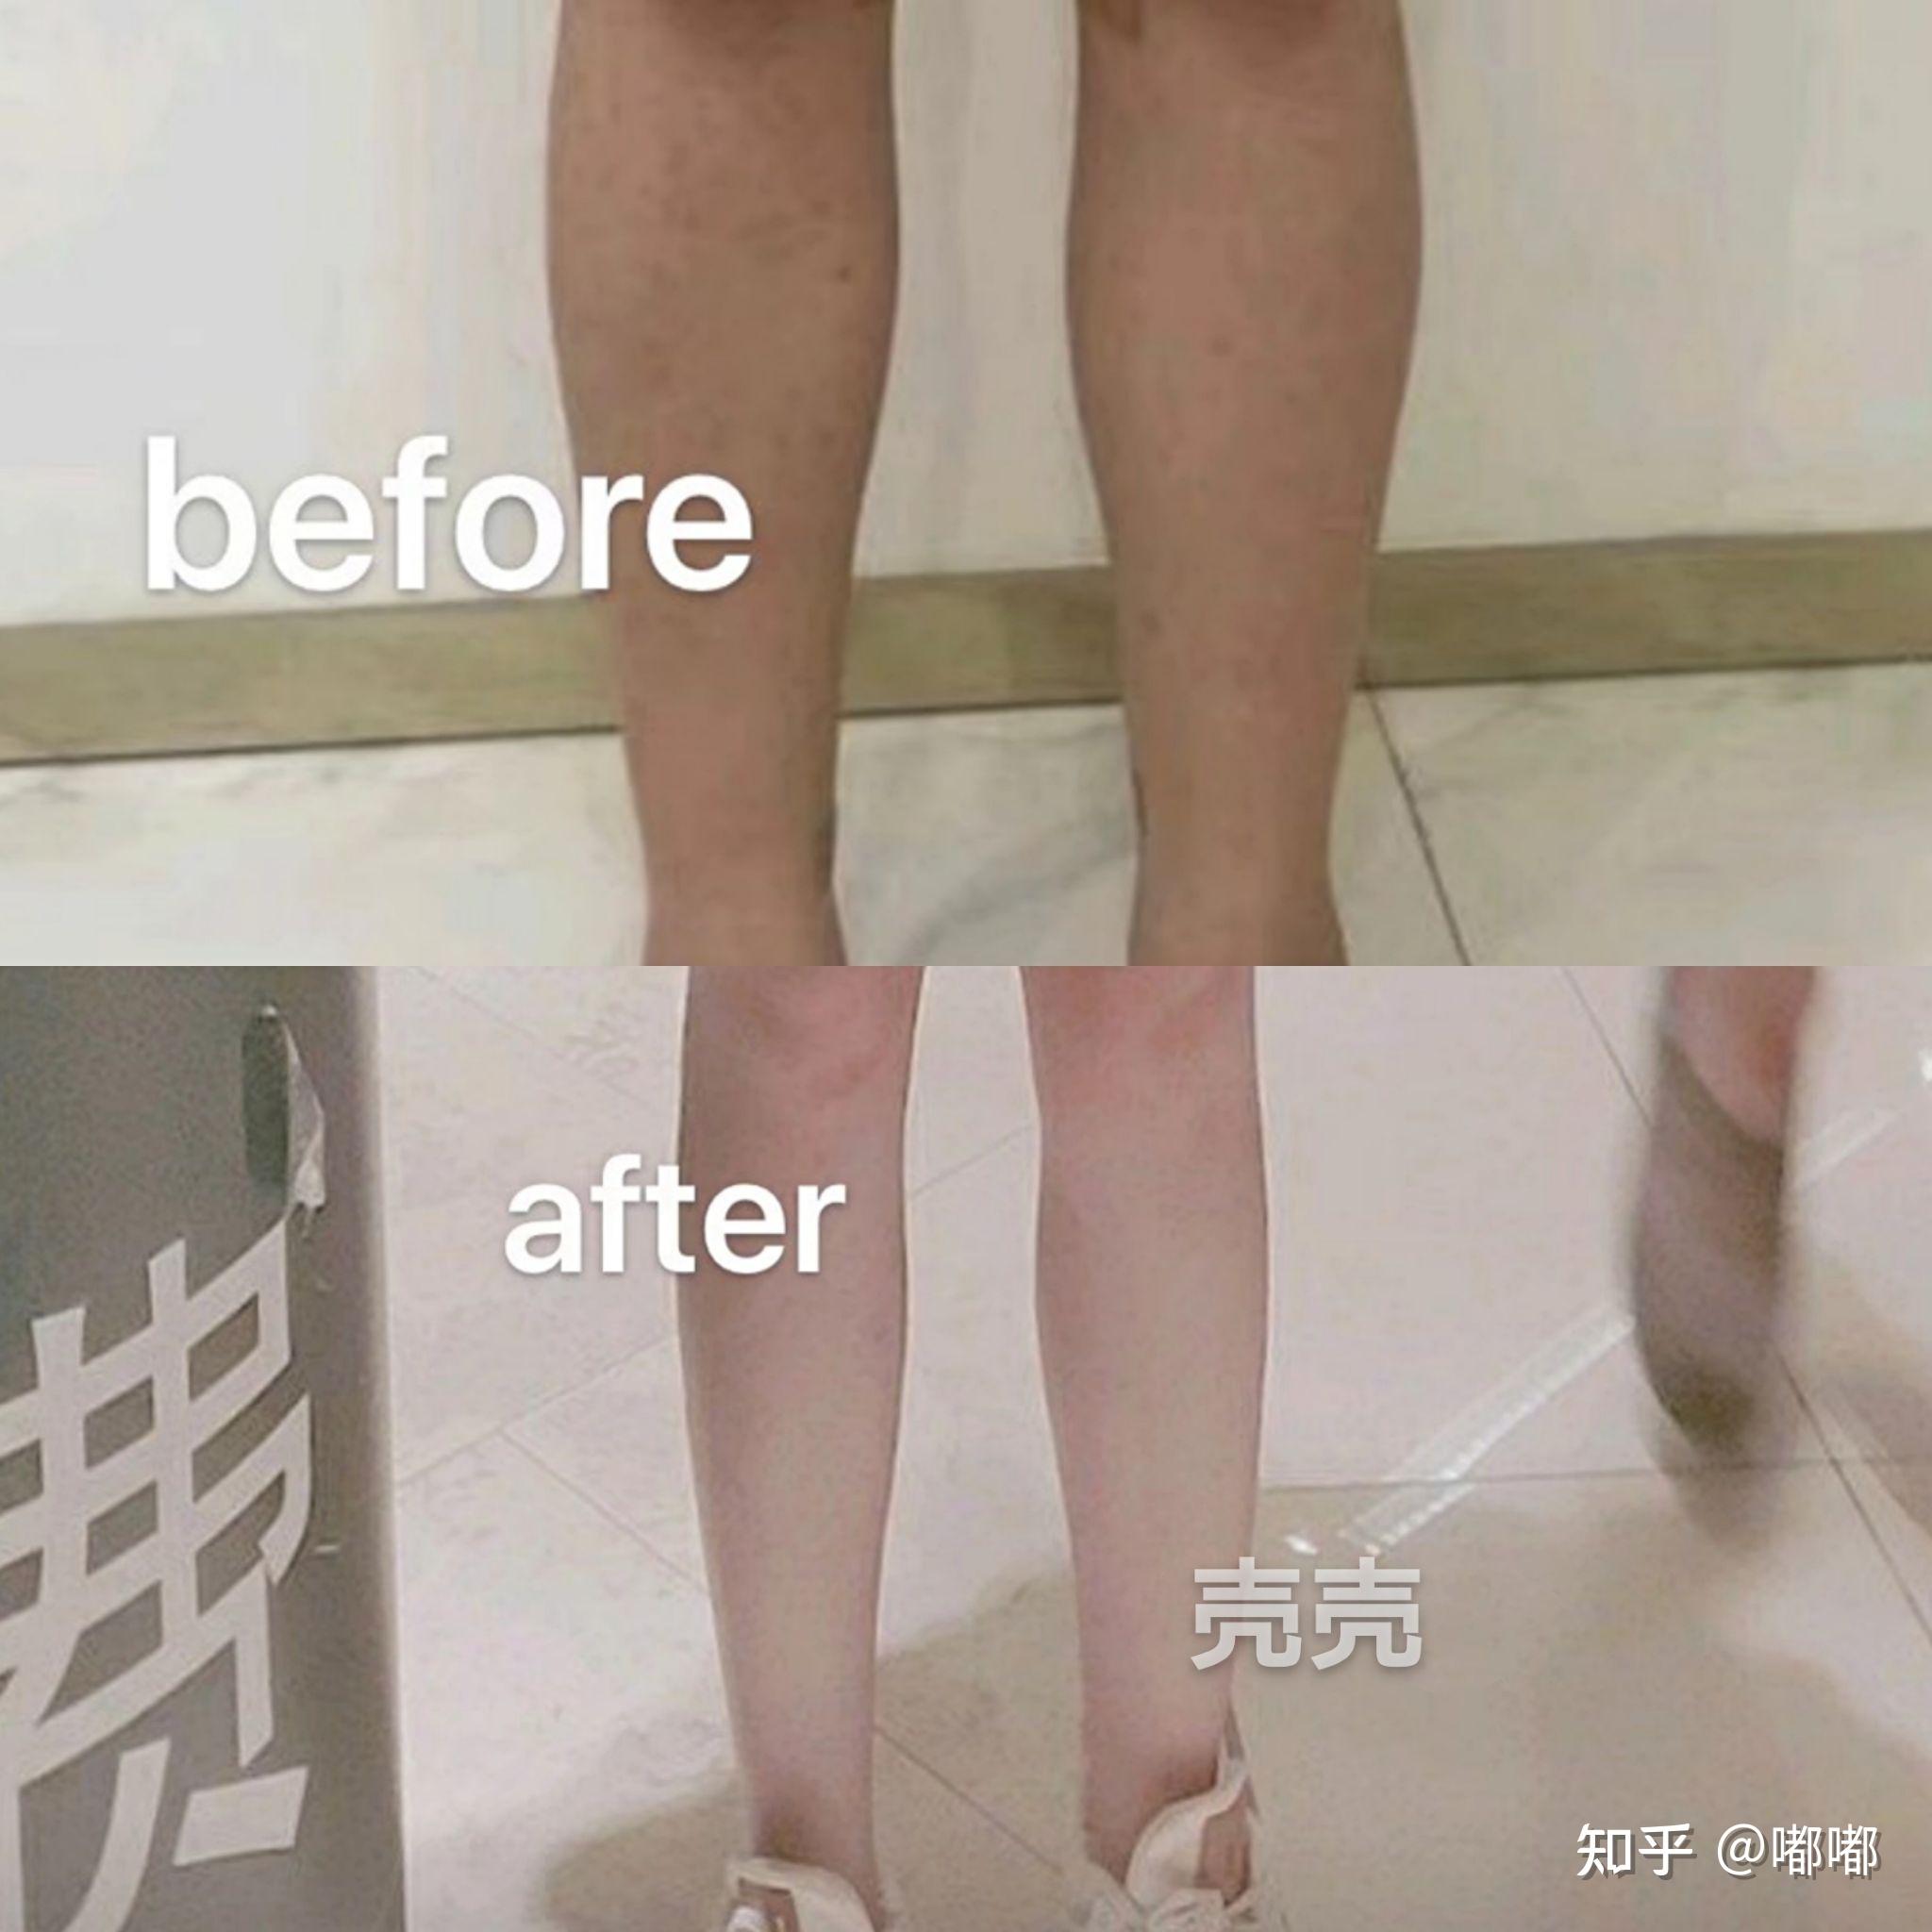 大腿環抽手術擺脫粗腿困擾抽脂術前全面評估|吳欣恆醫師|雅丰診所